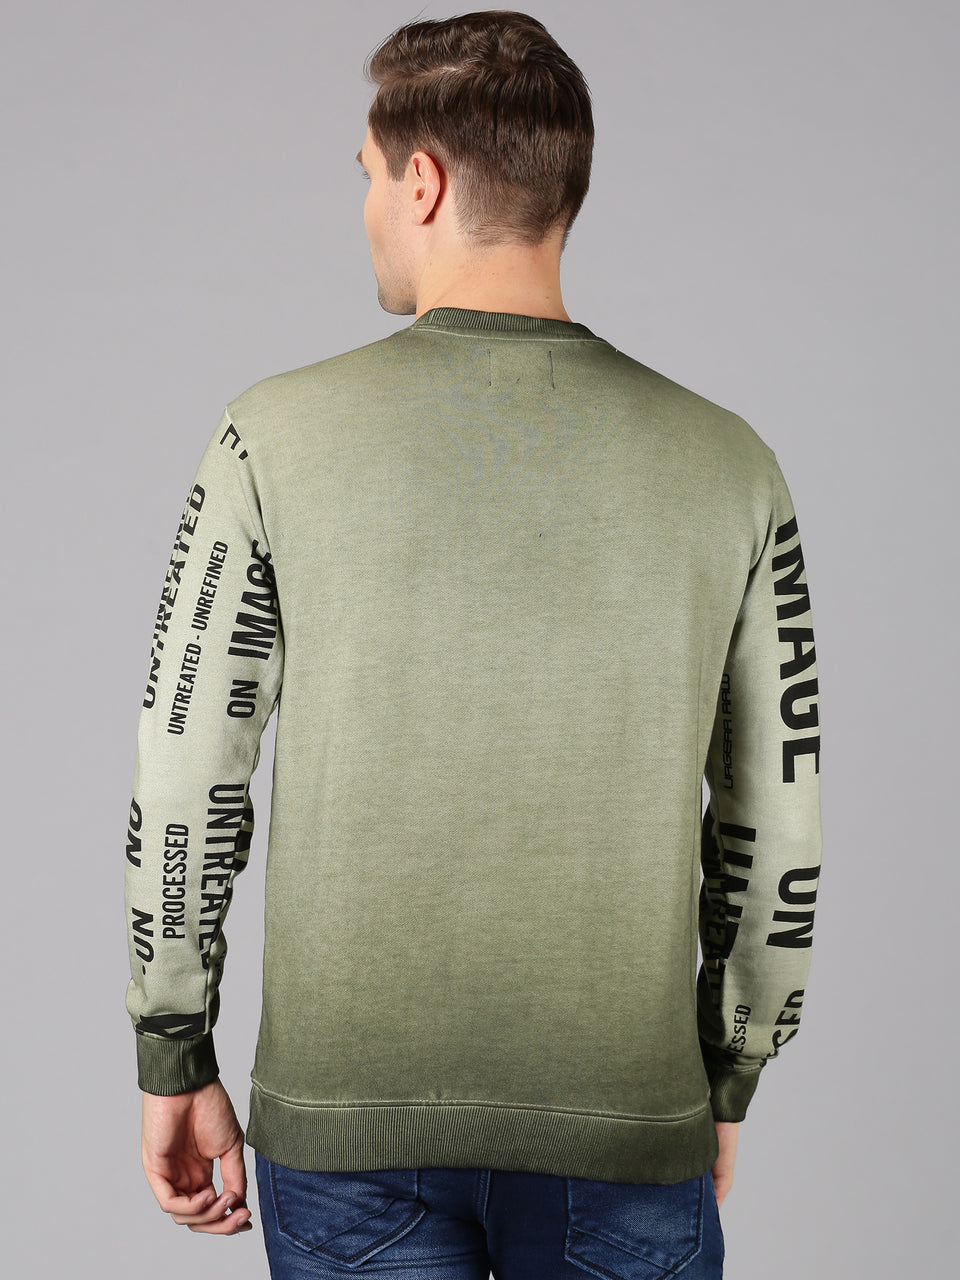 Men green printed crew neck pullover sweatshirt